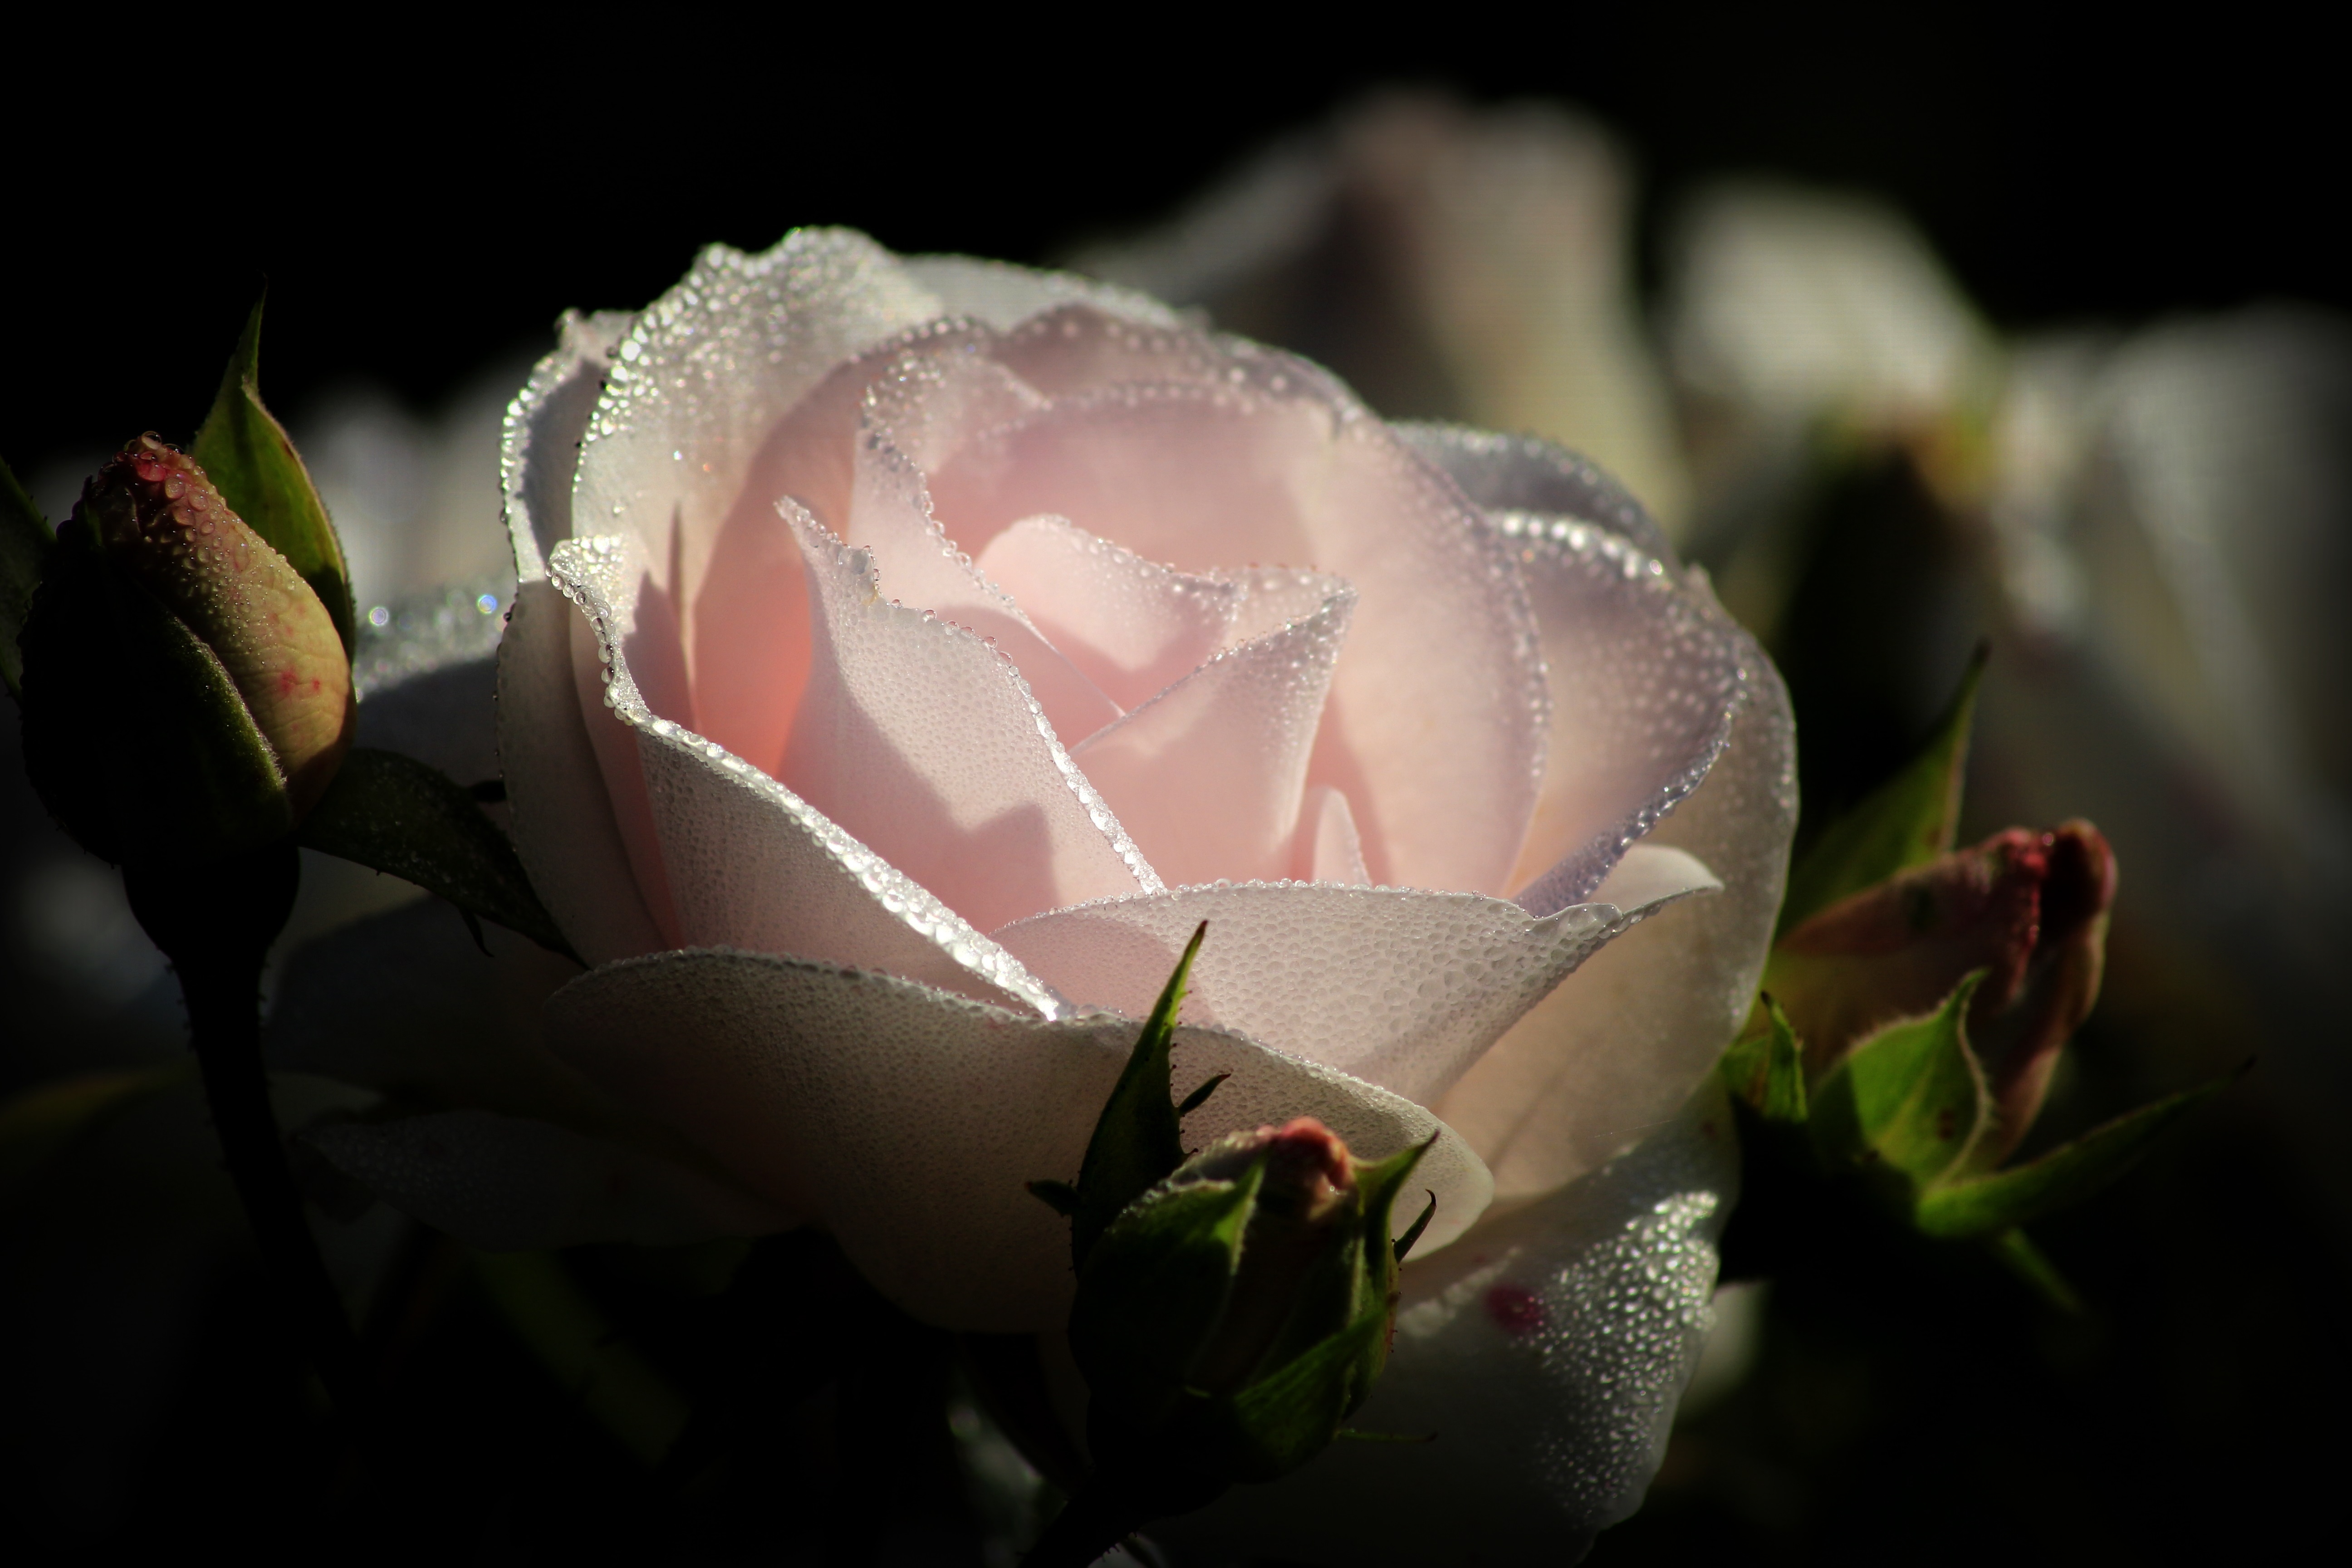 Белая роза в каплях росы фото